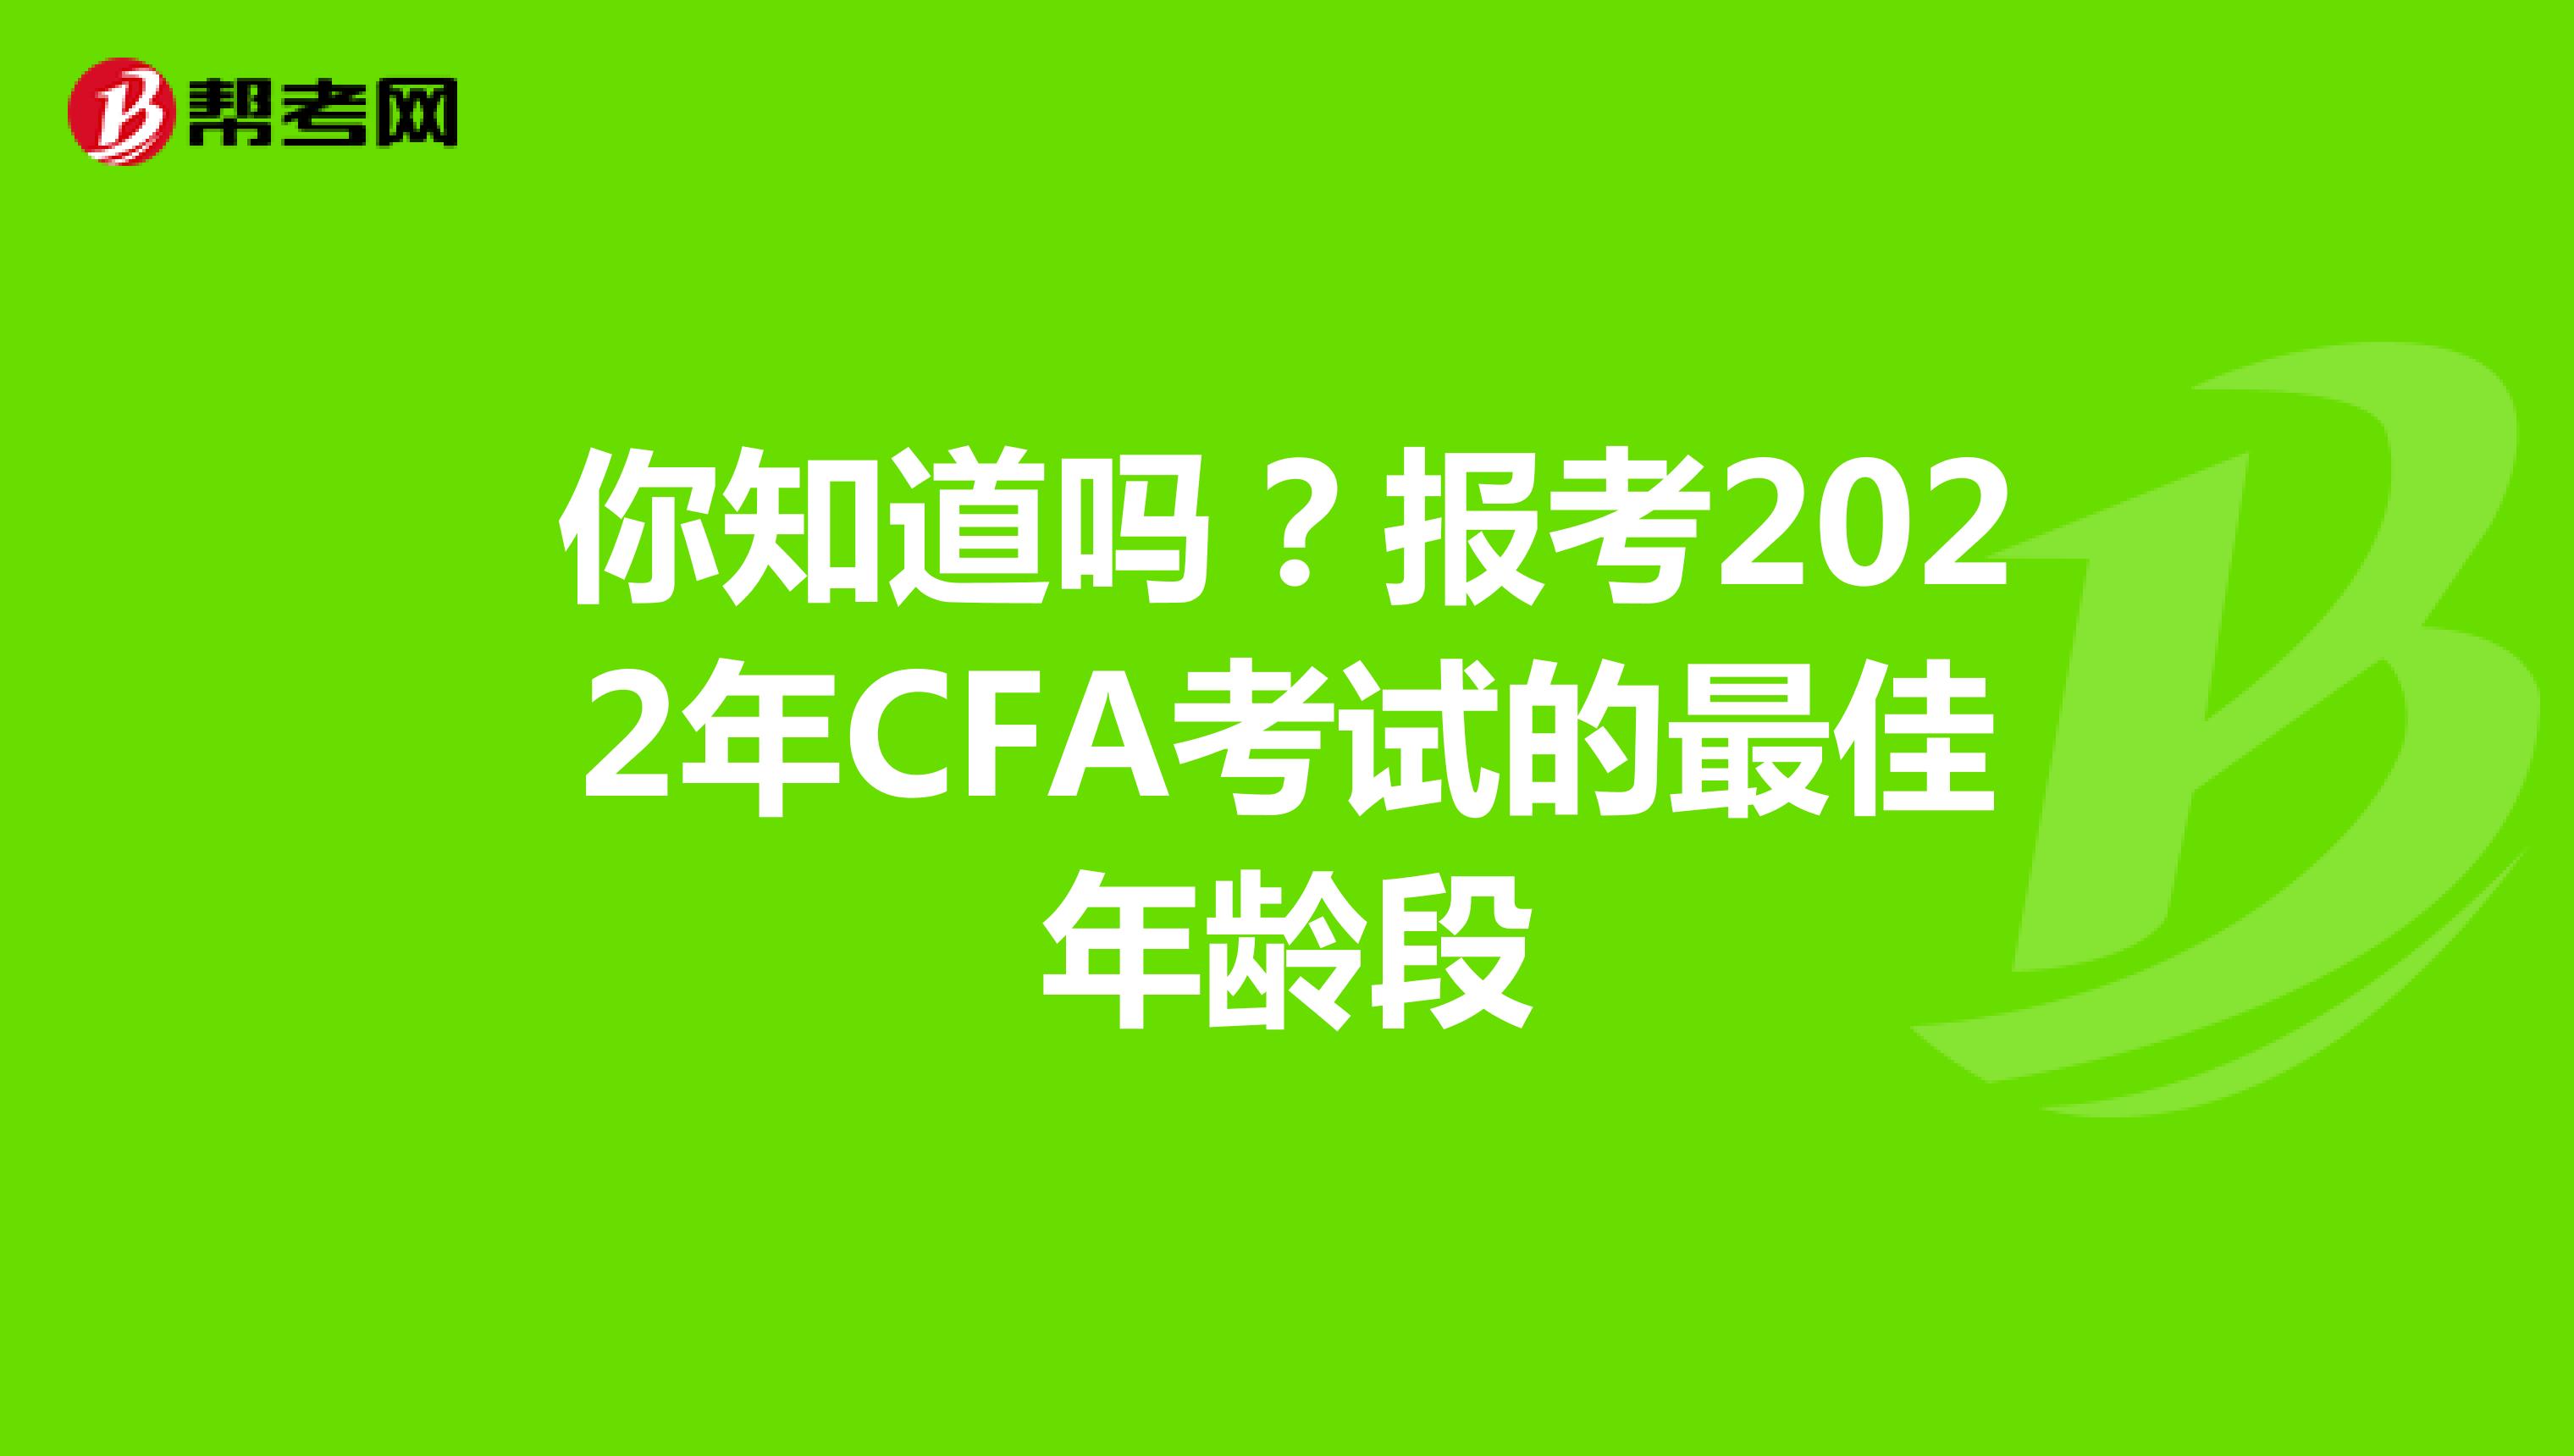 你知道吗？报考2022年CFA考试的最佳年龄段